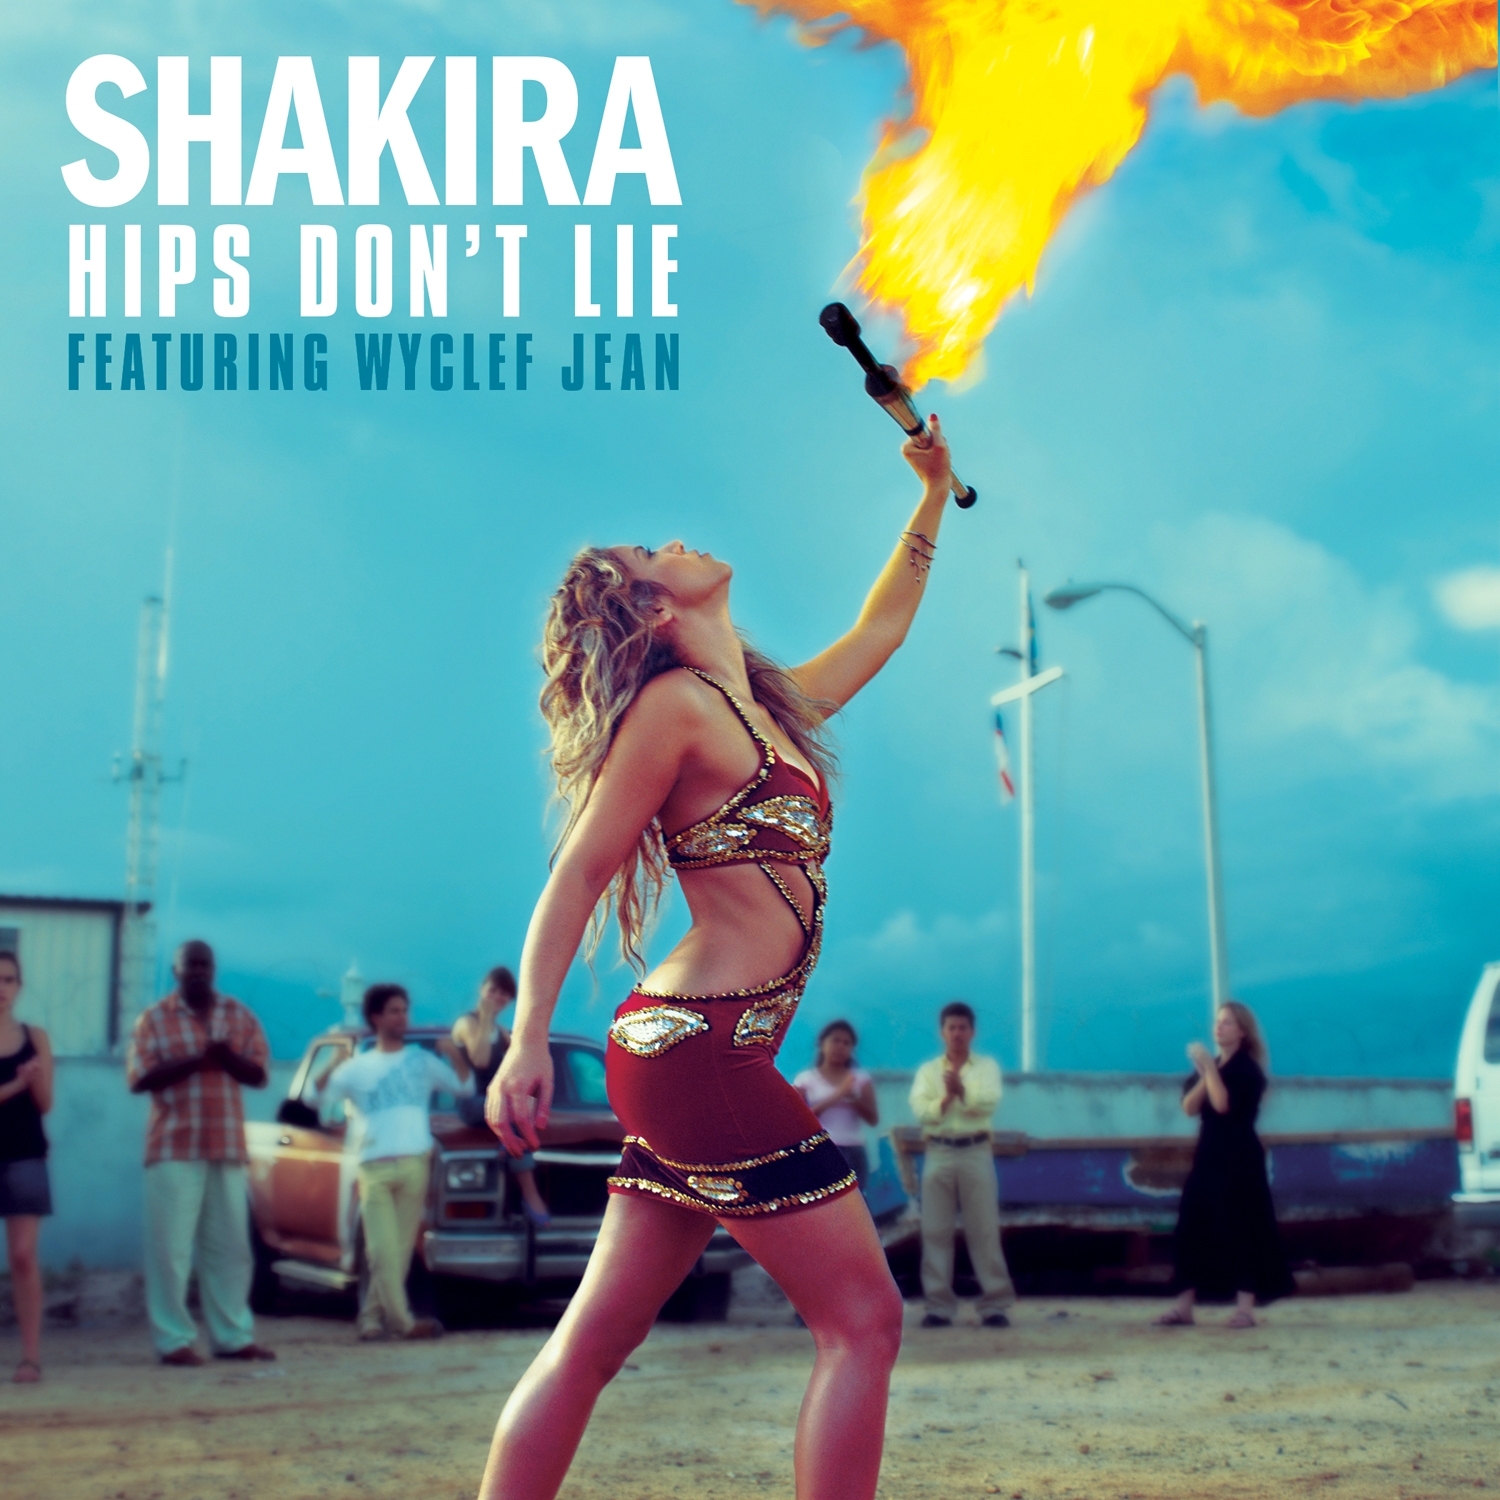 http://2.bp.blogspot.com/-VzkPcd5LTGg/TtADKux8zQI/AAAAAAAAGqo/3K2aOd1OZlI/s1600/Shakira+-+Hips+Don_t+Lie+-+Single.jpg